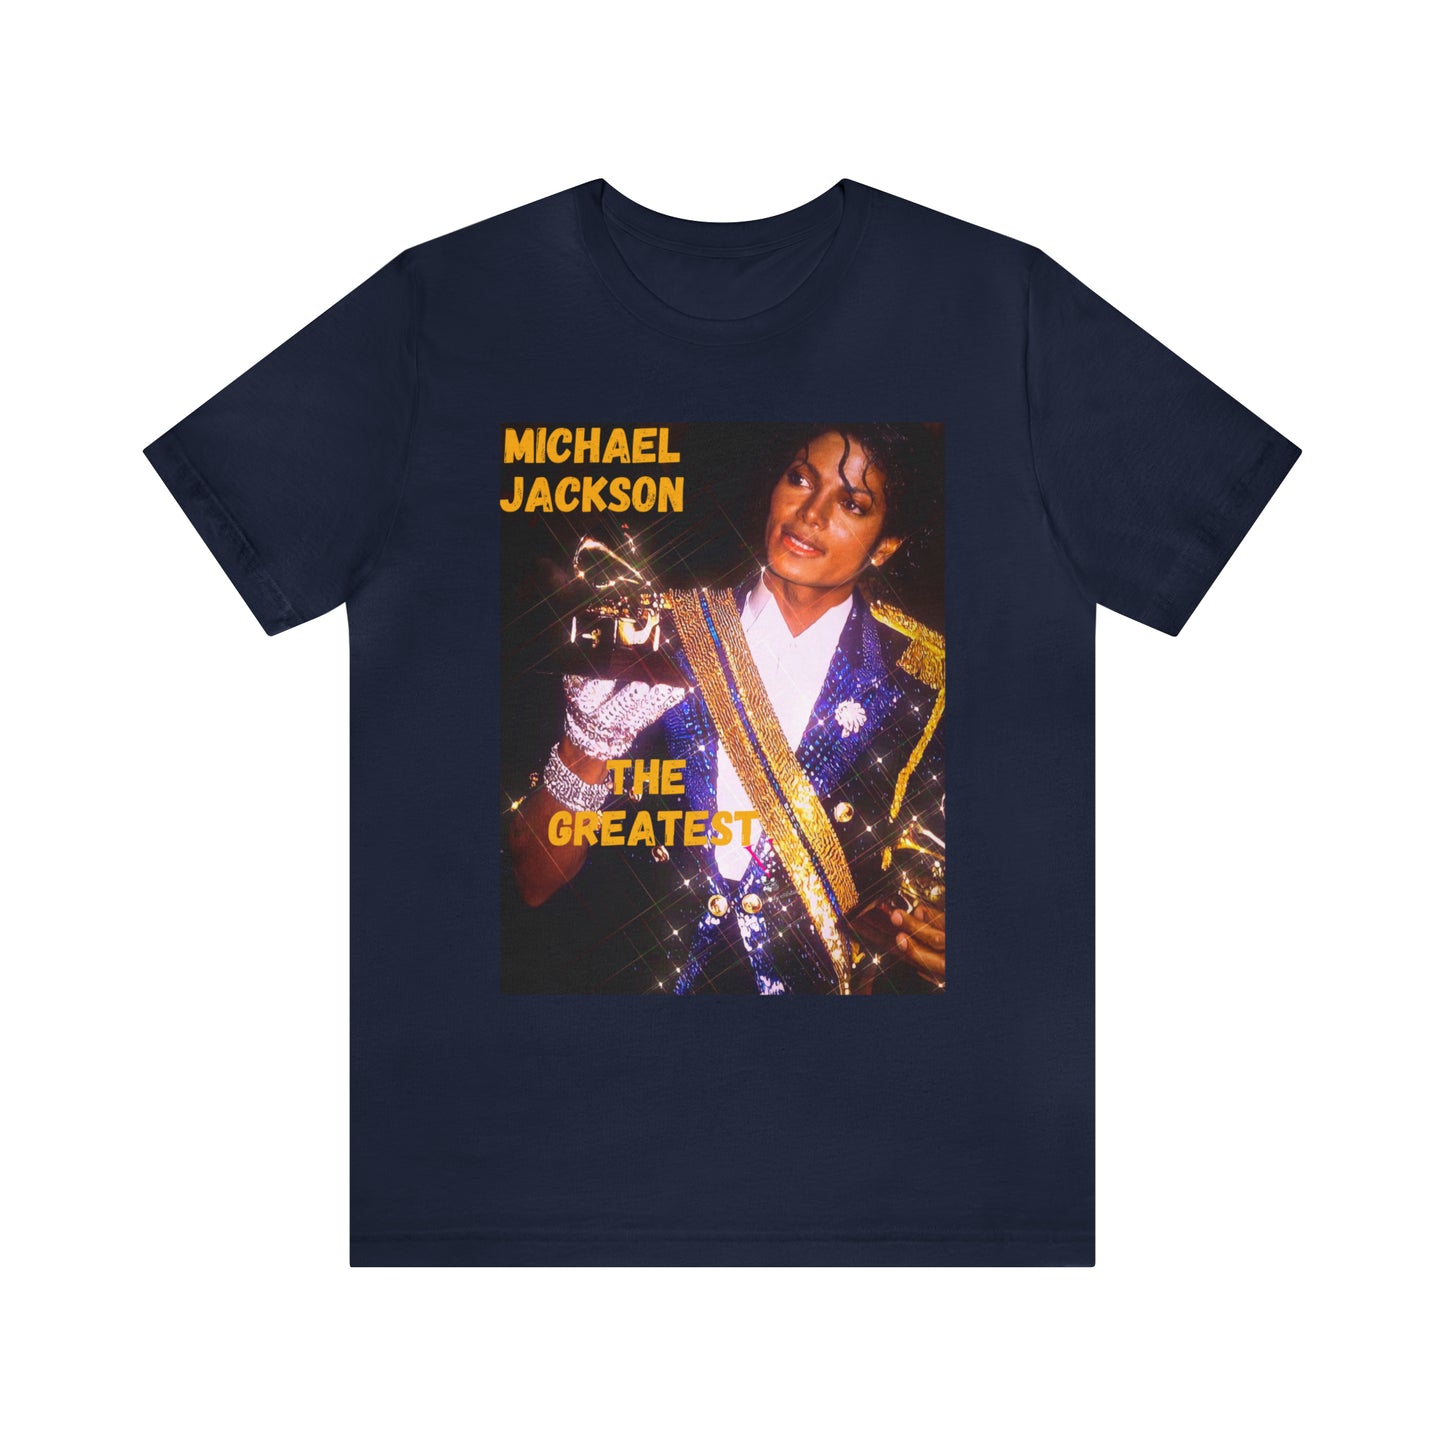 MJ THE GREATEST: Unisex Jersey Short Sleeve Tee